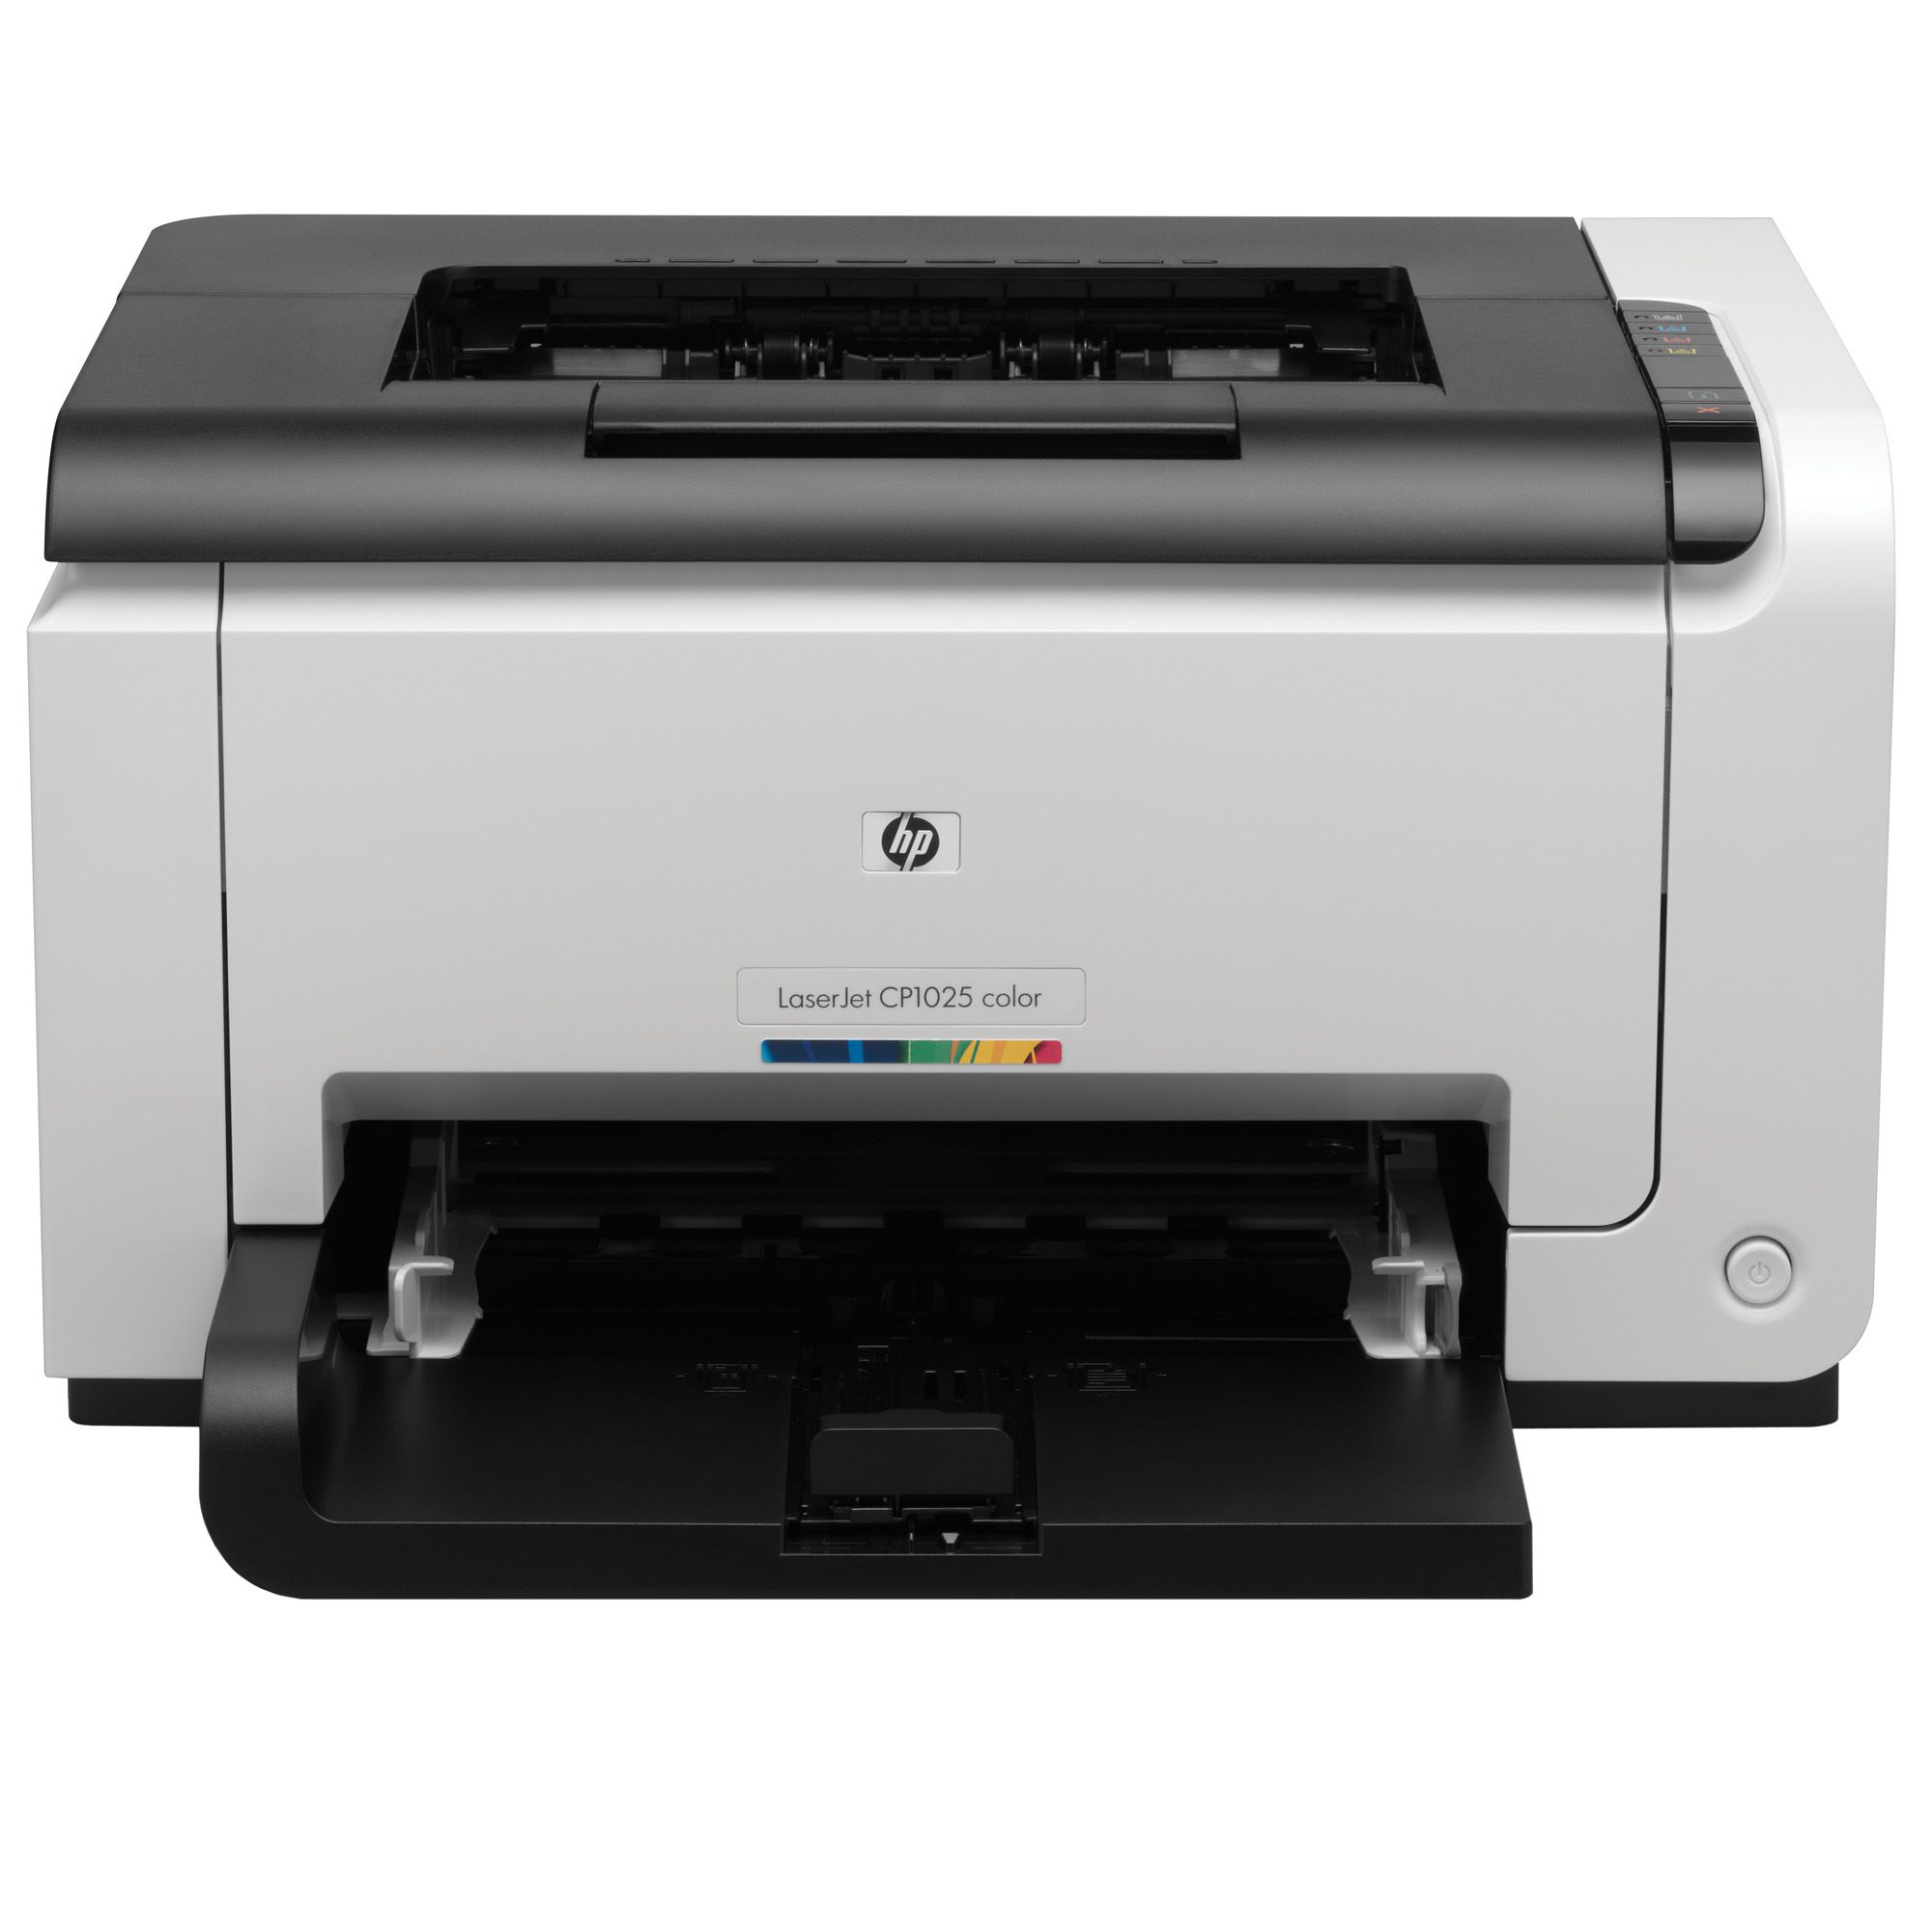  Imprimanta laser color HP Pro CP1025, A4 